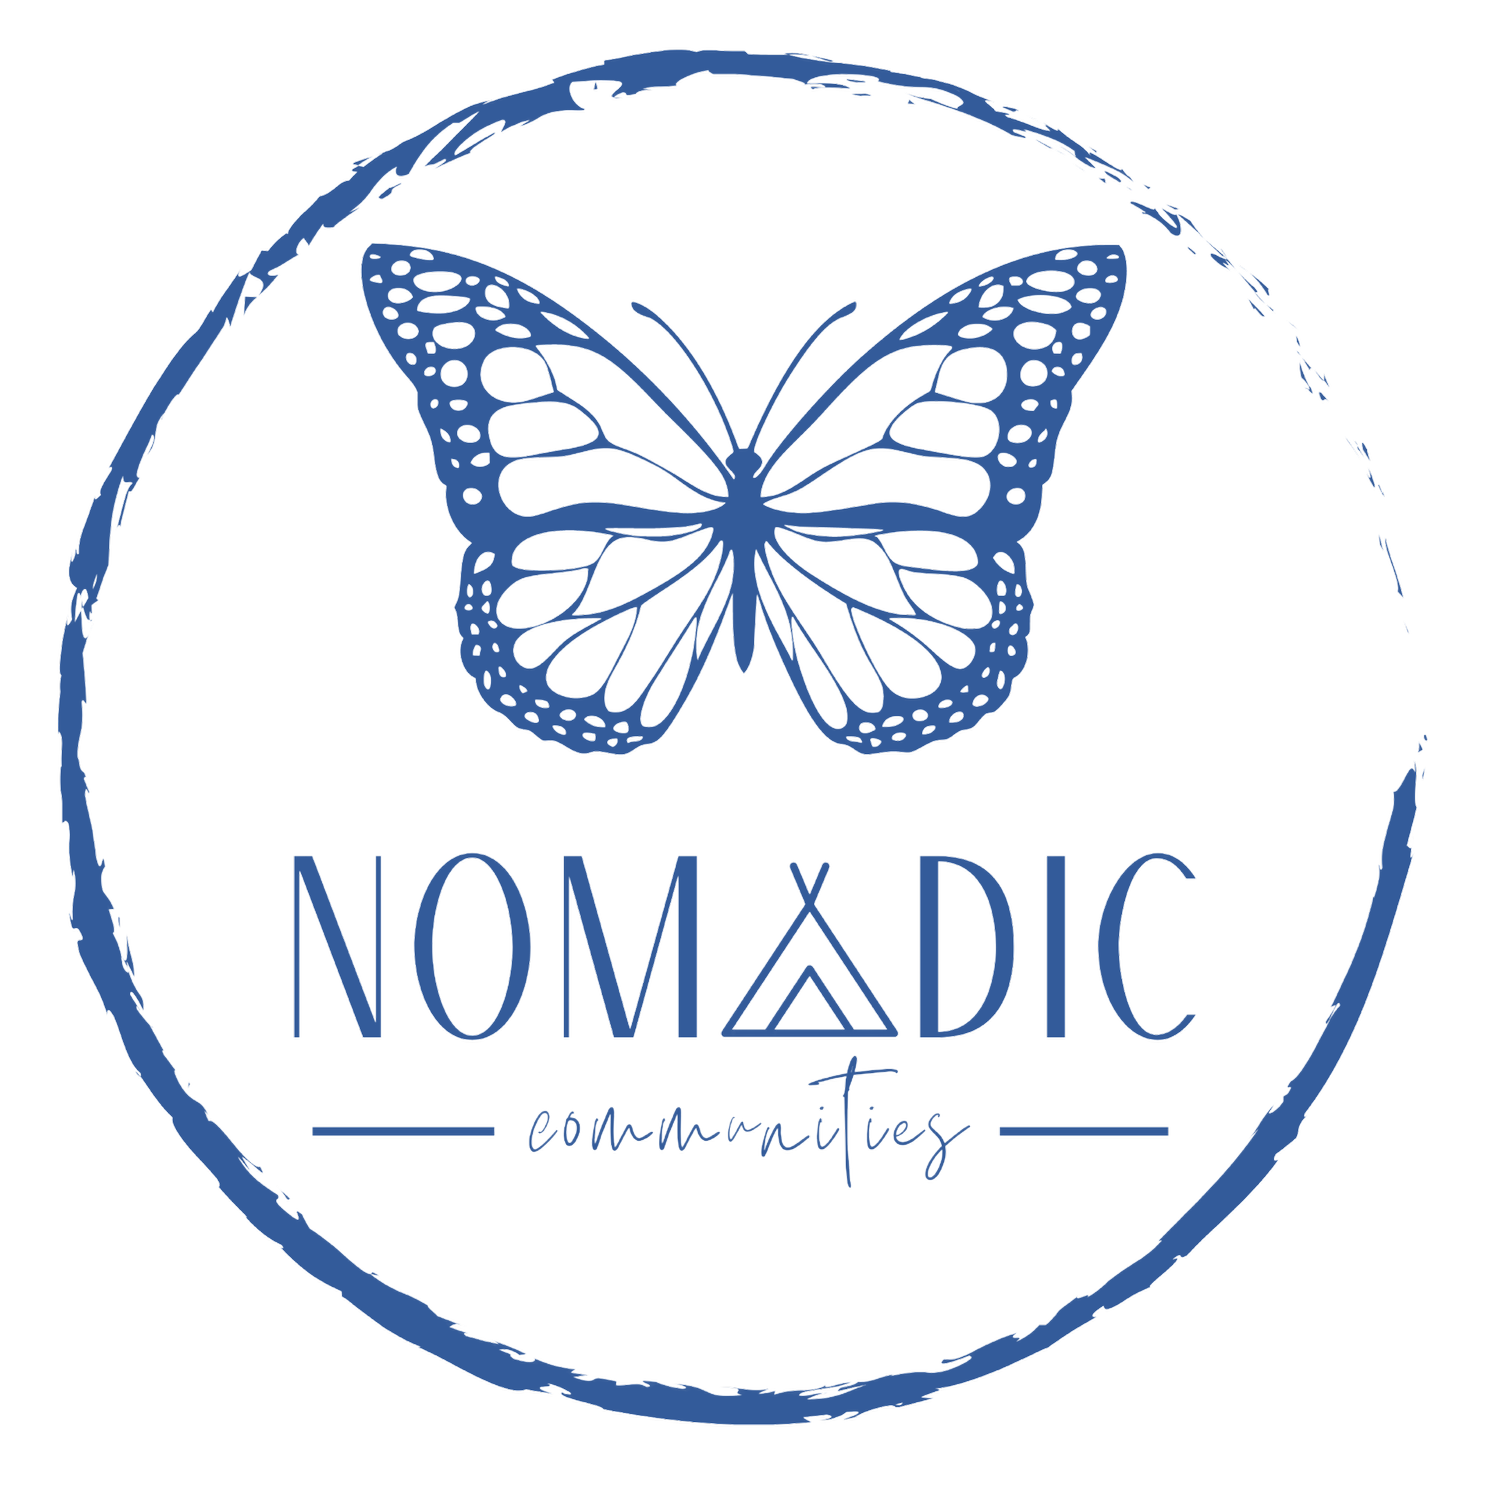 Nomadic Communities